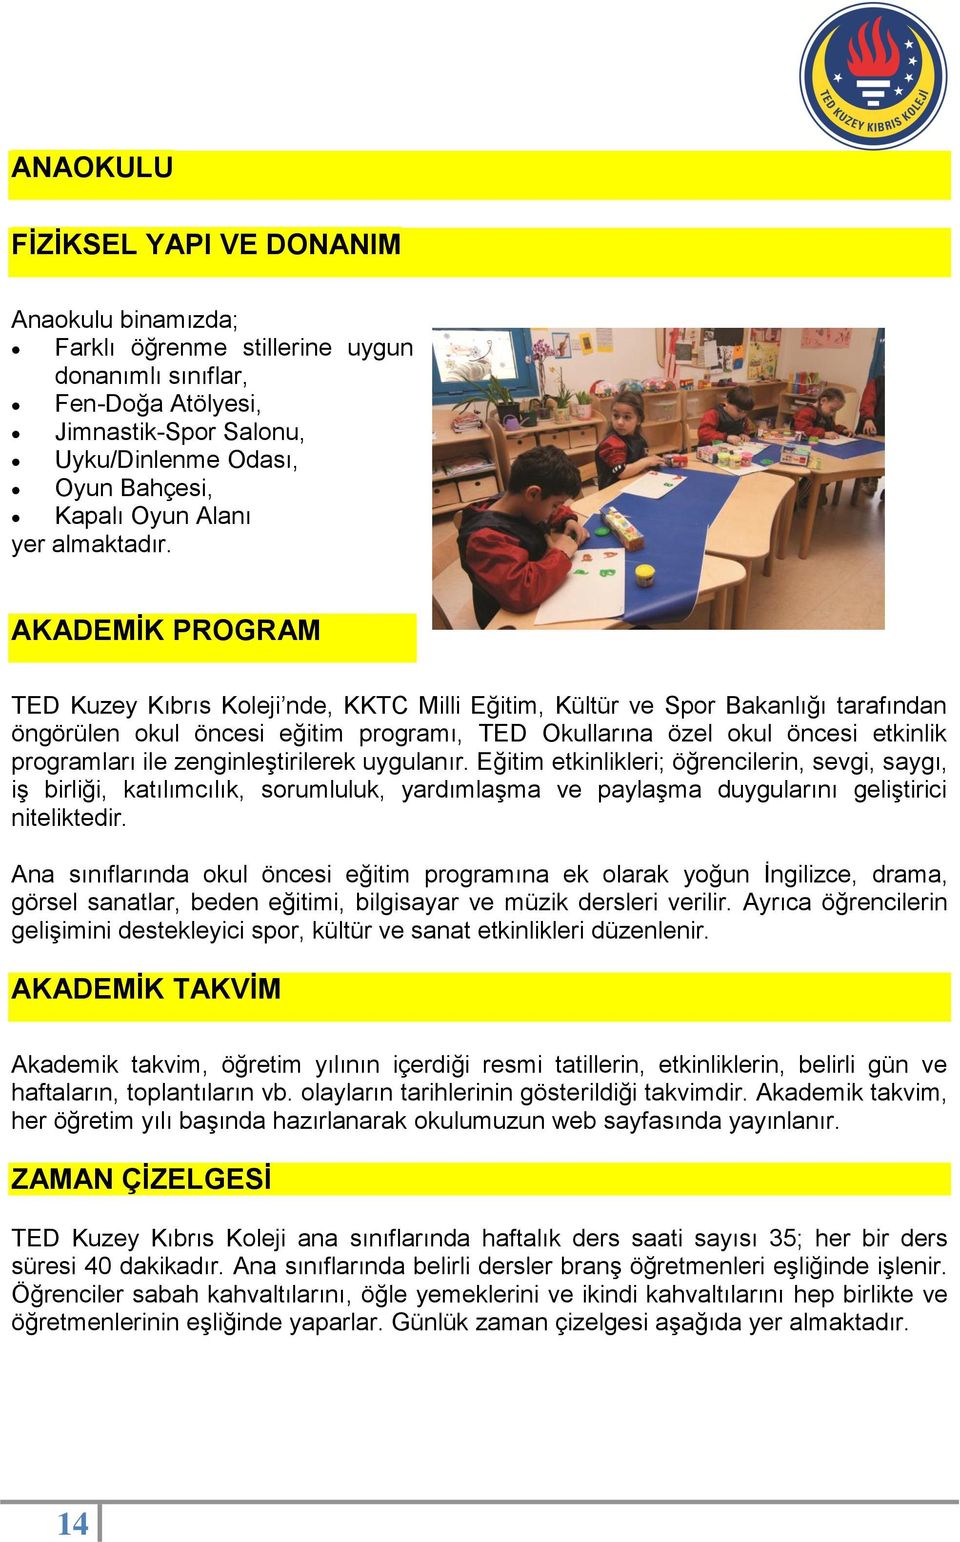 AKADEMĠK PROGRAM TED Kuzey Kıbrıs Koleji nde, KKTC Milli Eğitim, Kültür ve Spor Bakanlığı tarafından öngörülen okul öncesi eğitim programı, TED Okullarına özel okul öncesi etkinlik programları ile